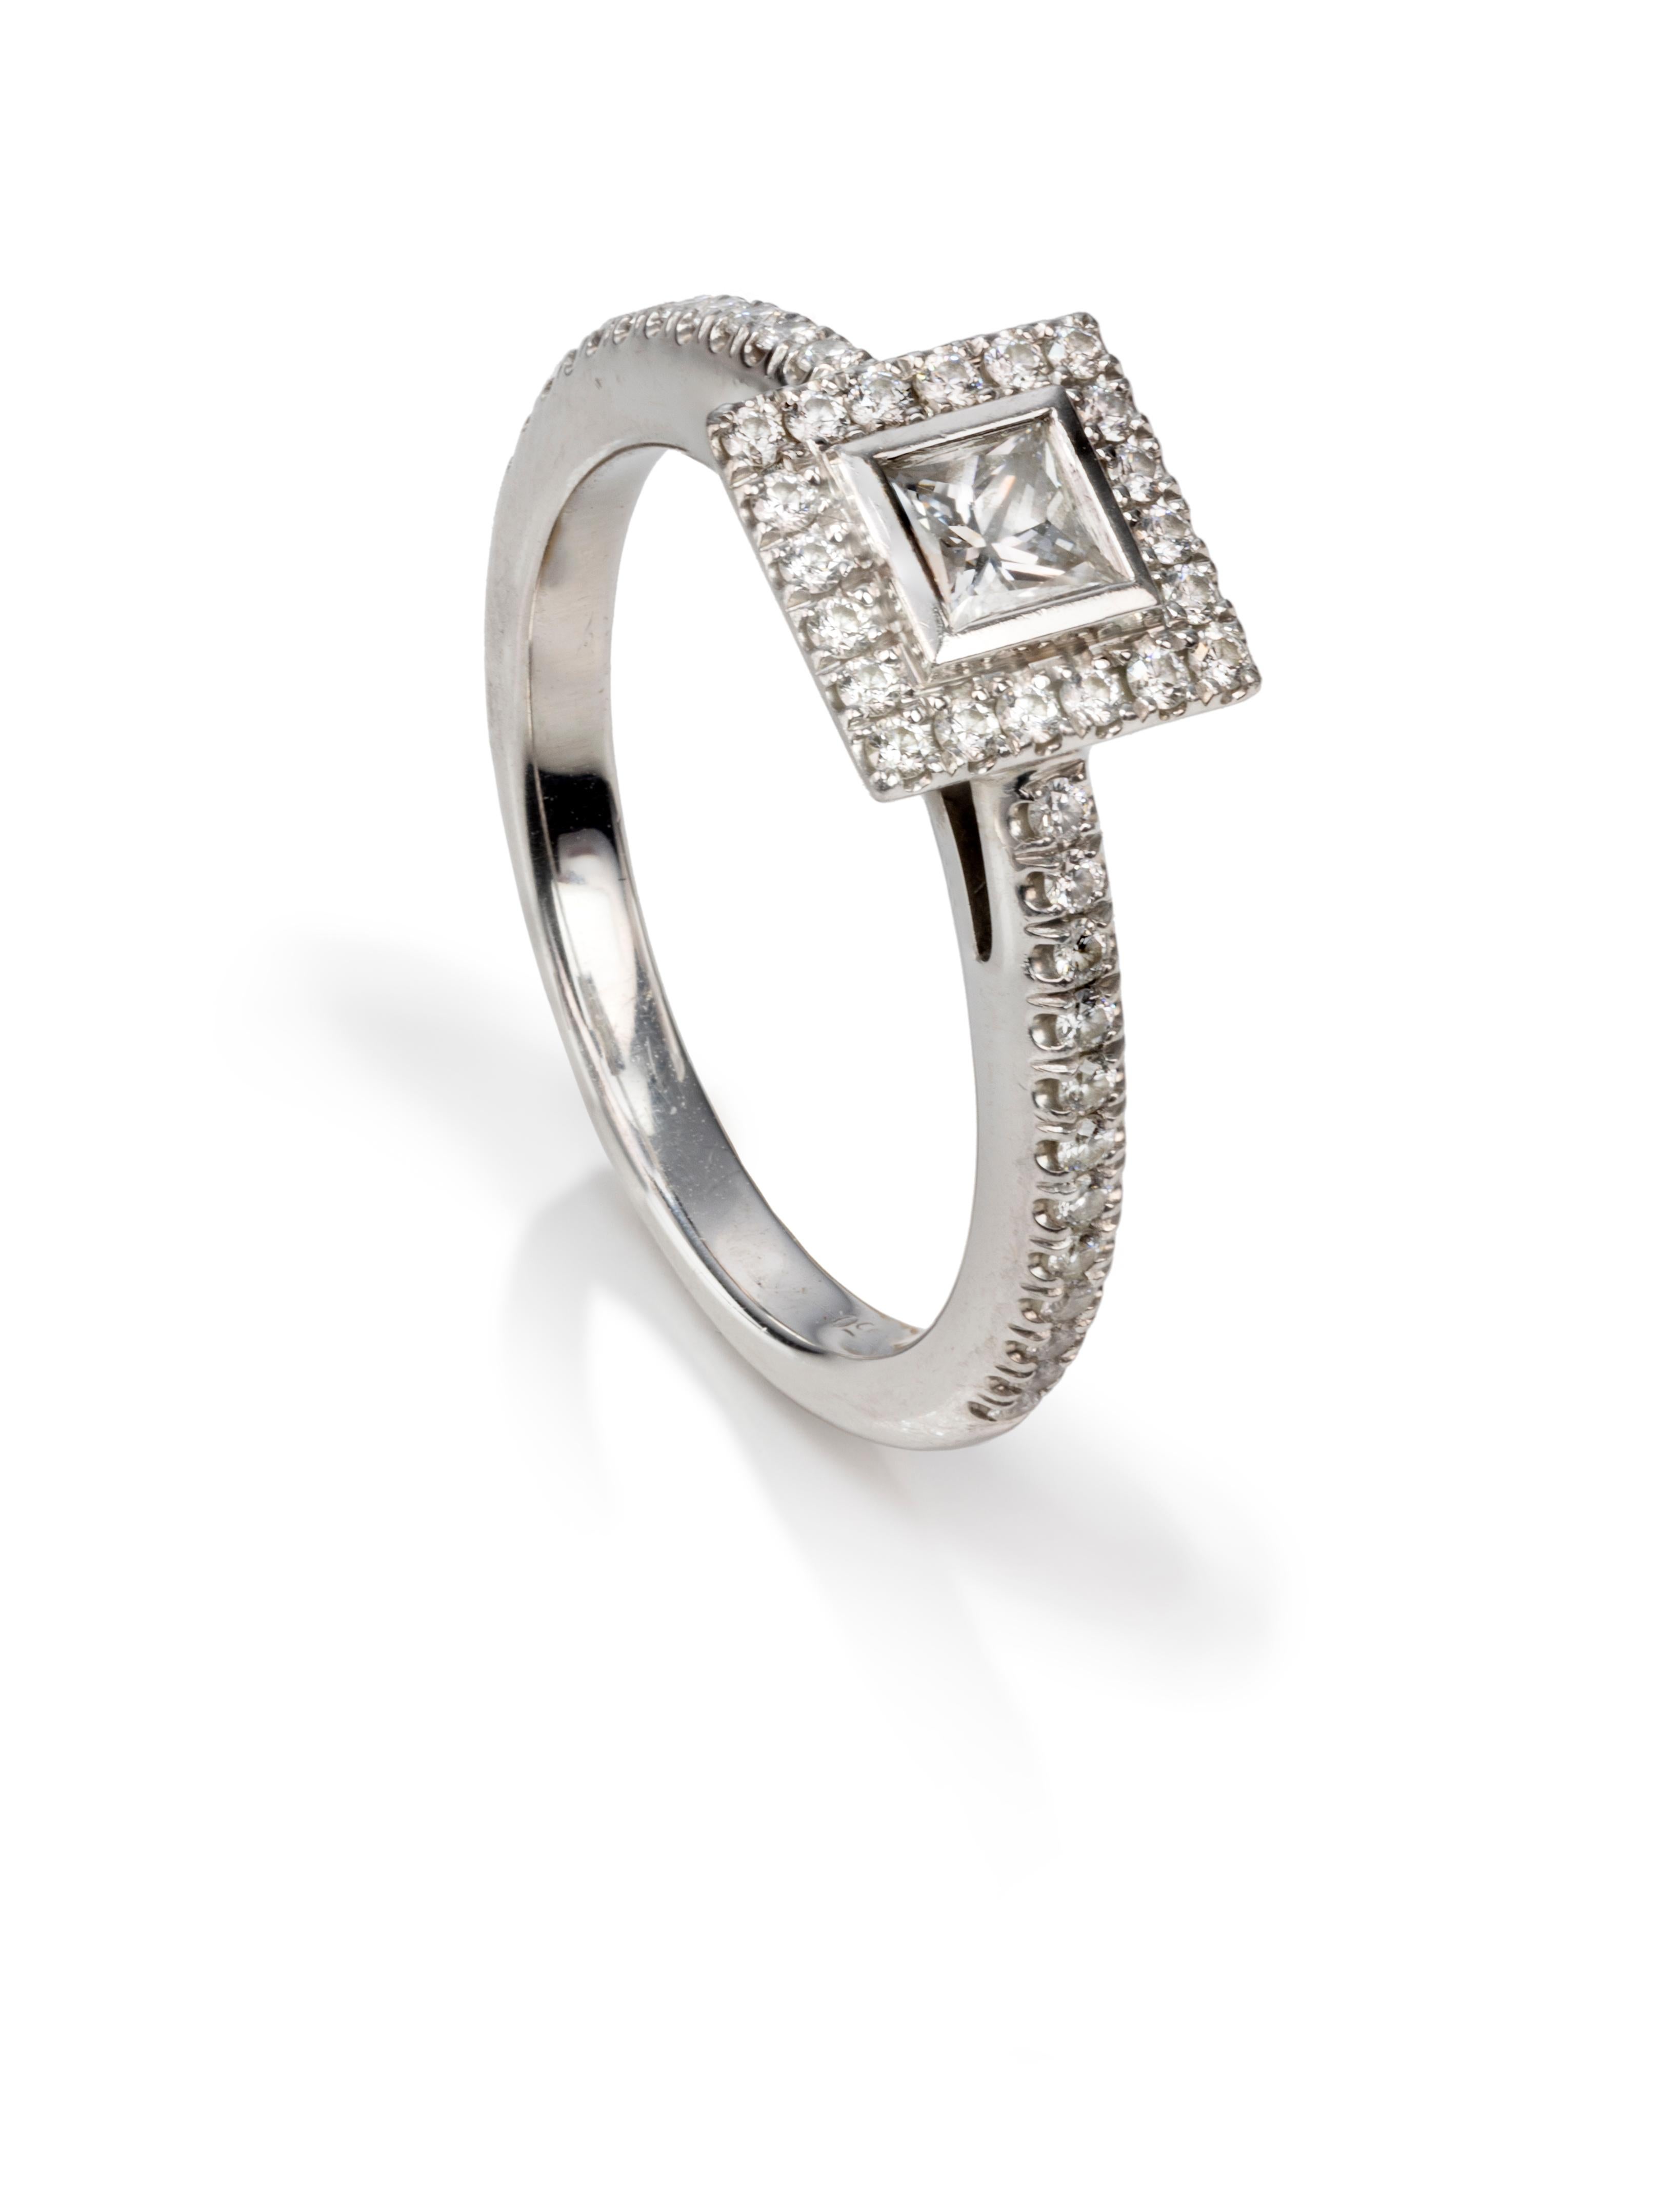 Dieser kleine Ring von Tiffany's ist bezaubernd.  Ein perfekter Ring für den kleinen Finger oder Stapler.  Der Ring stammt aus der Grace